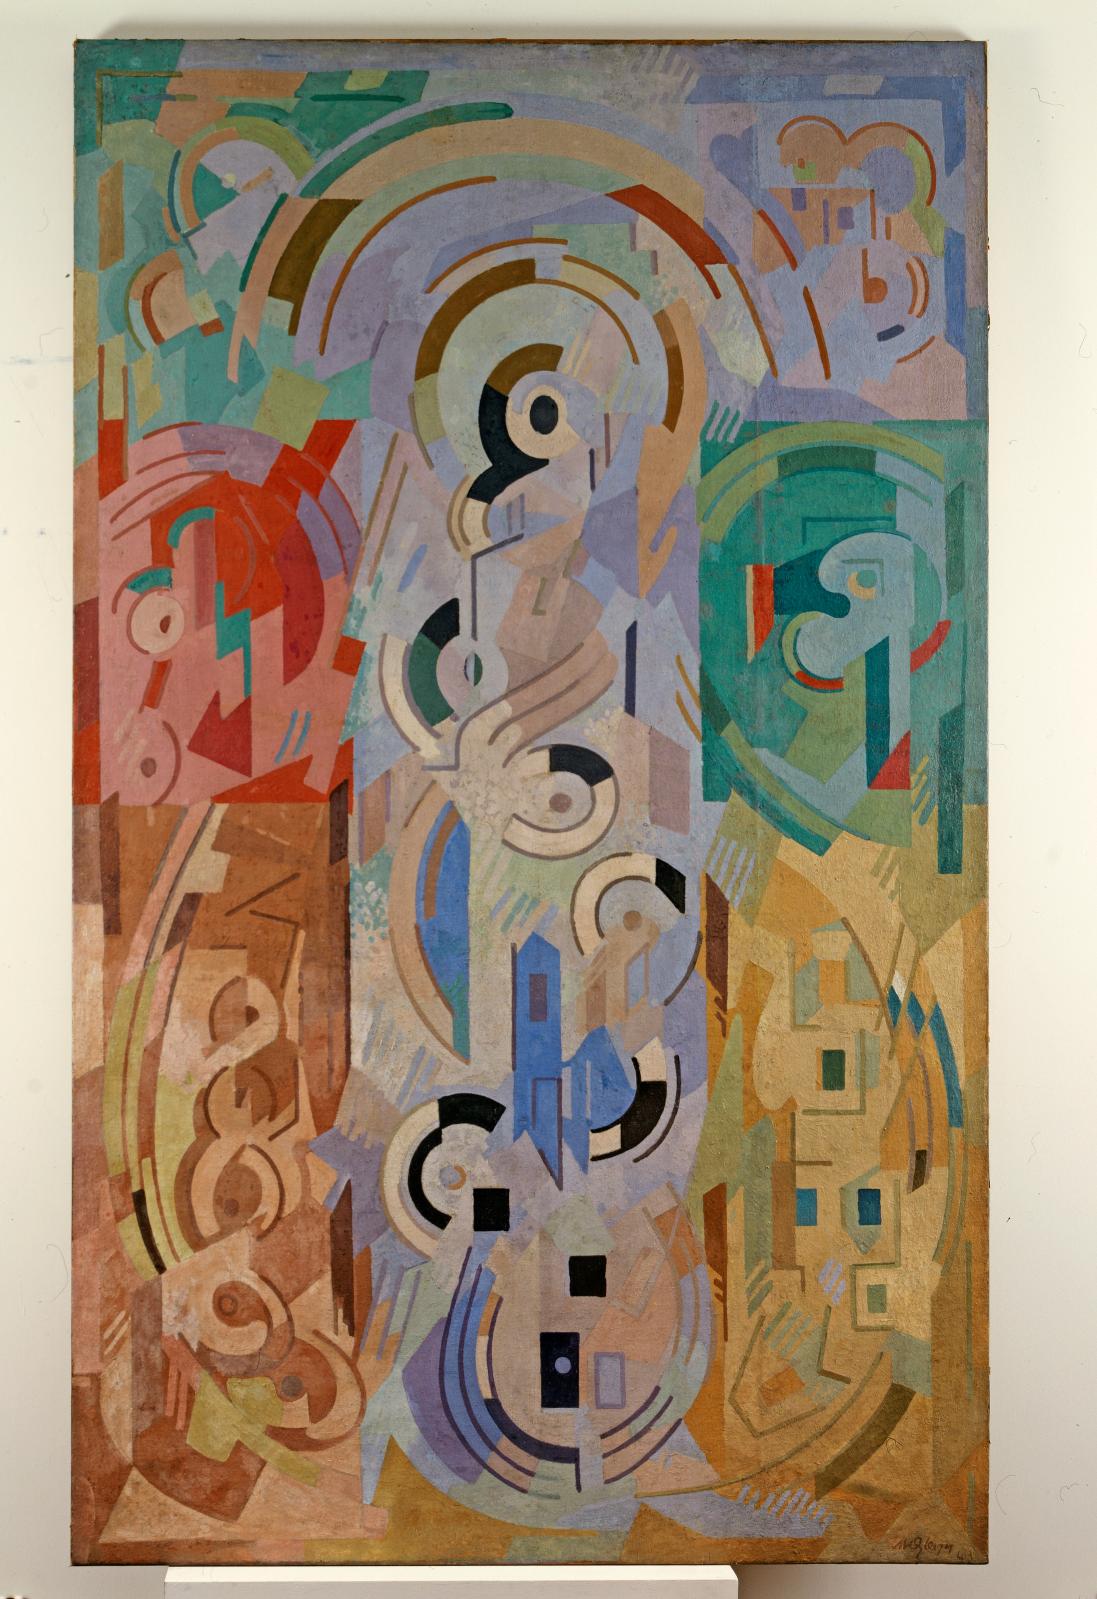 Albert Gleizes, Composition à sept éléments, 1943, huile sur toile, 300 x 179,5 cm, détail. Donation Muguette et Paul Dini 2, 2000. Villefranche-sur-S